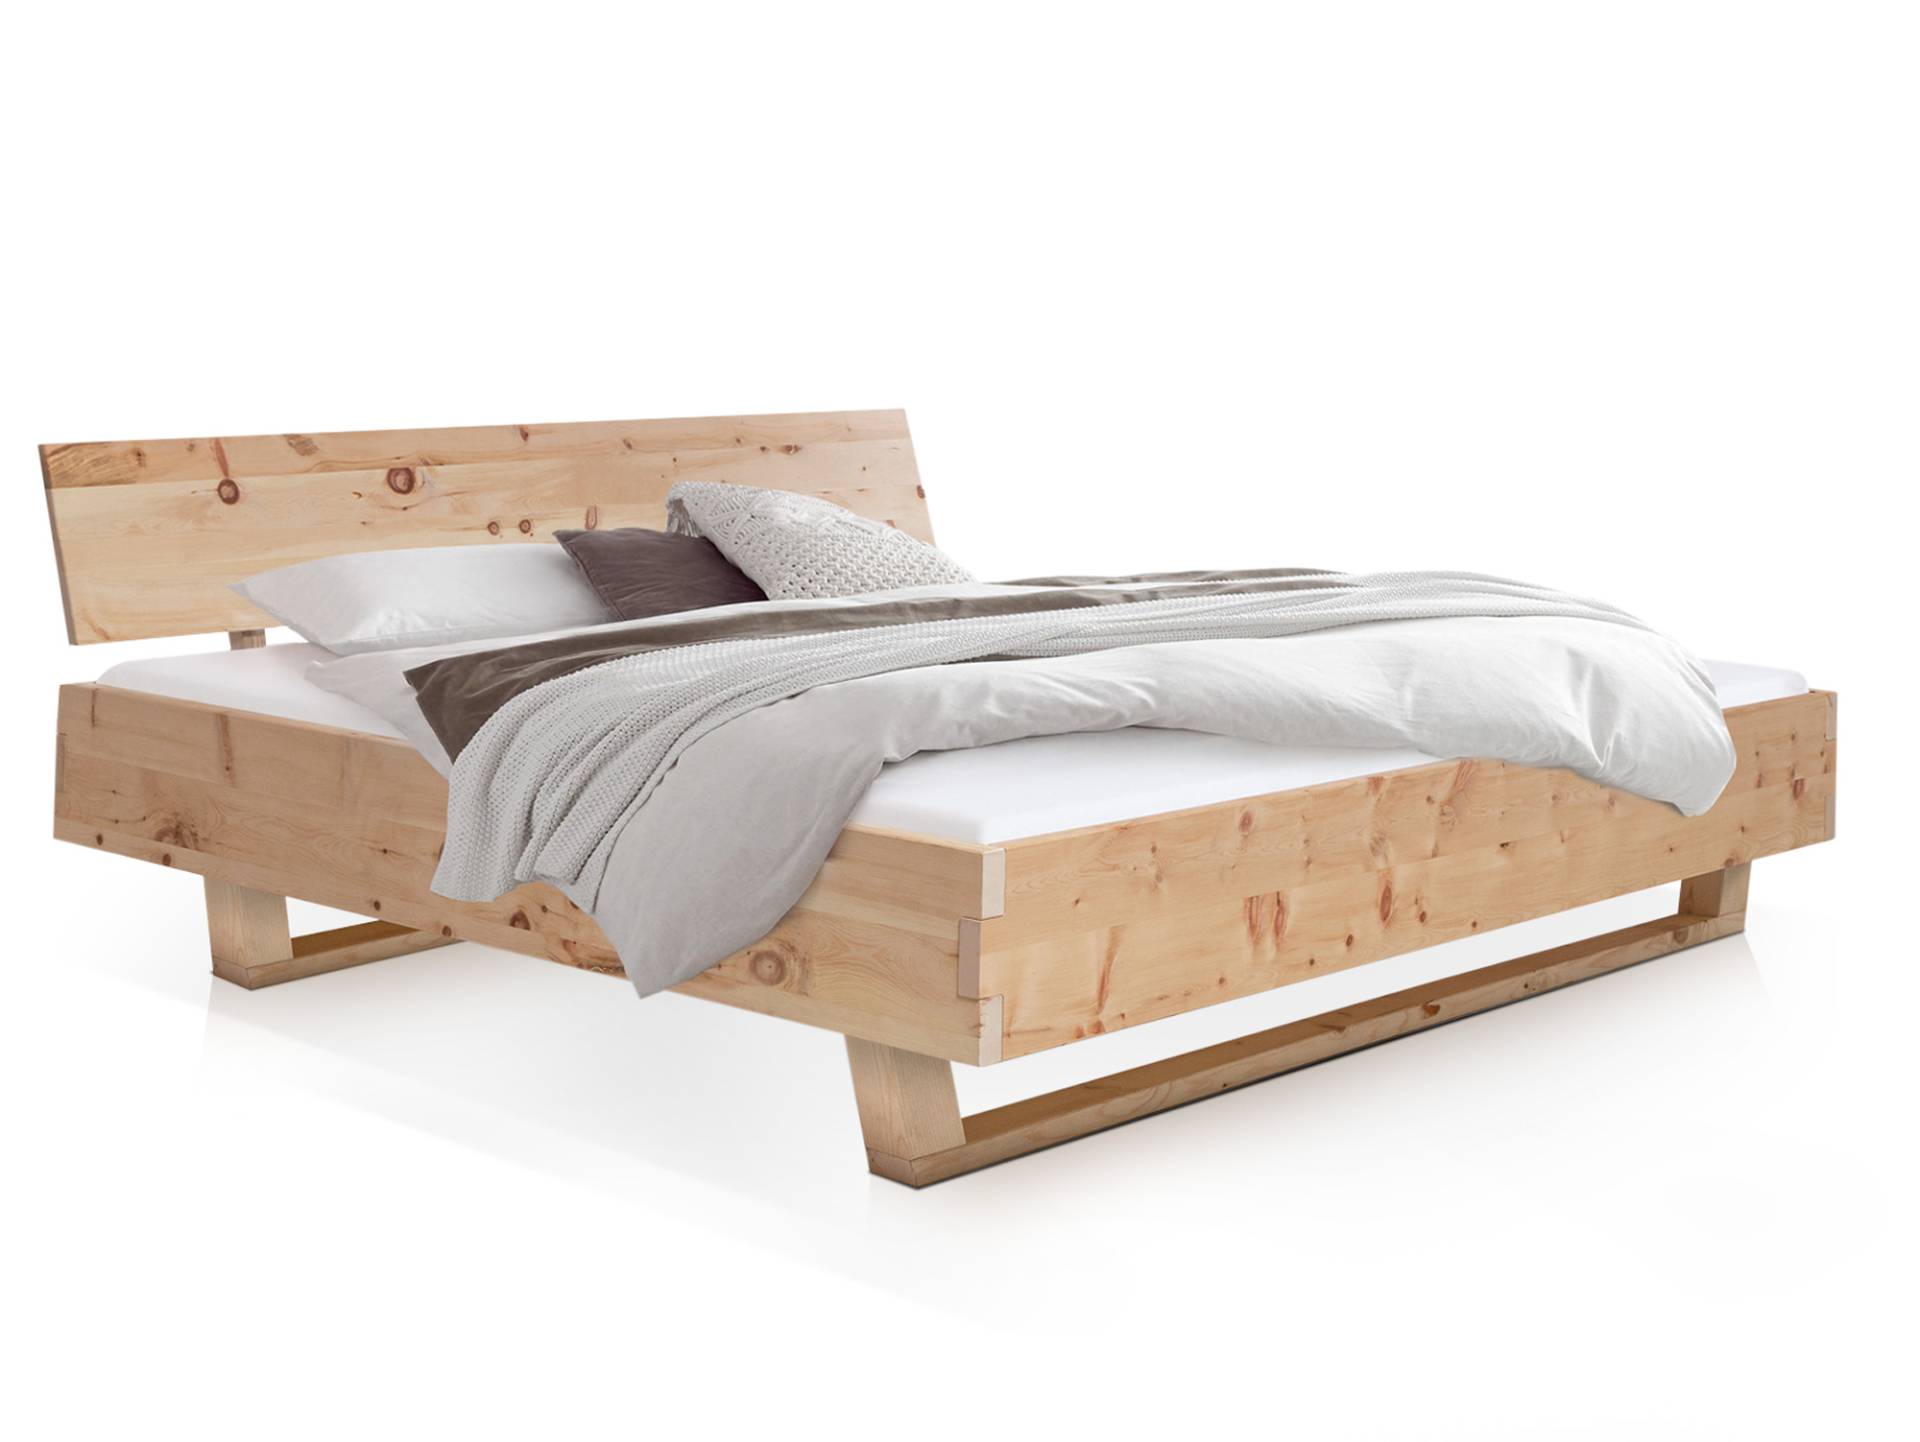 ZARUBA Zirbenbett mit Holz-Kufen / Holzkopfteil, Material Massivholz, Zirbe unbehandelt, mit / ohne Kopfteil von Möbel-Eins